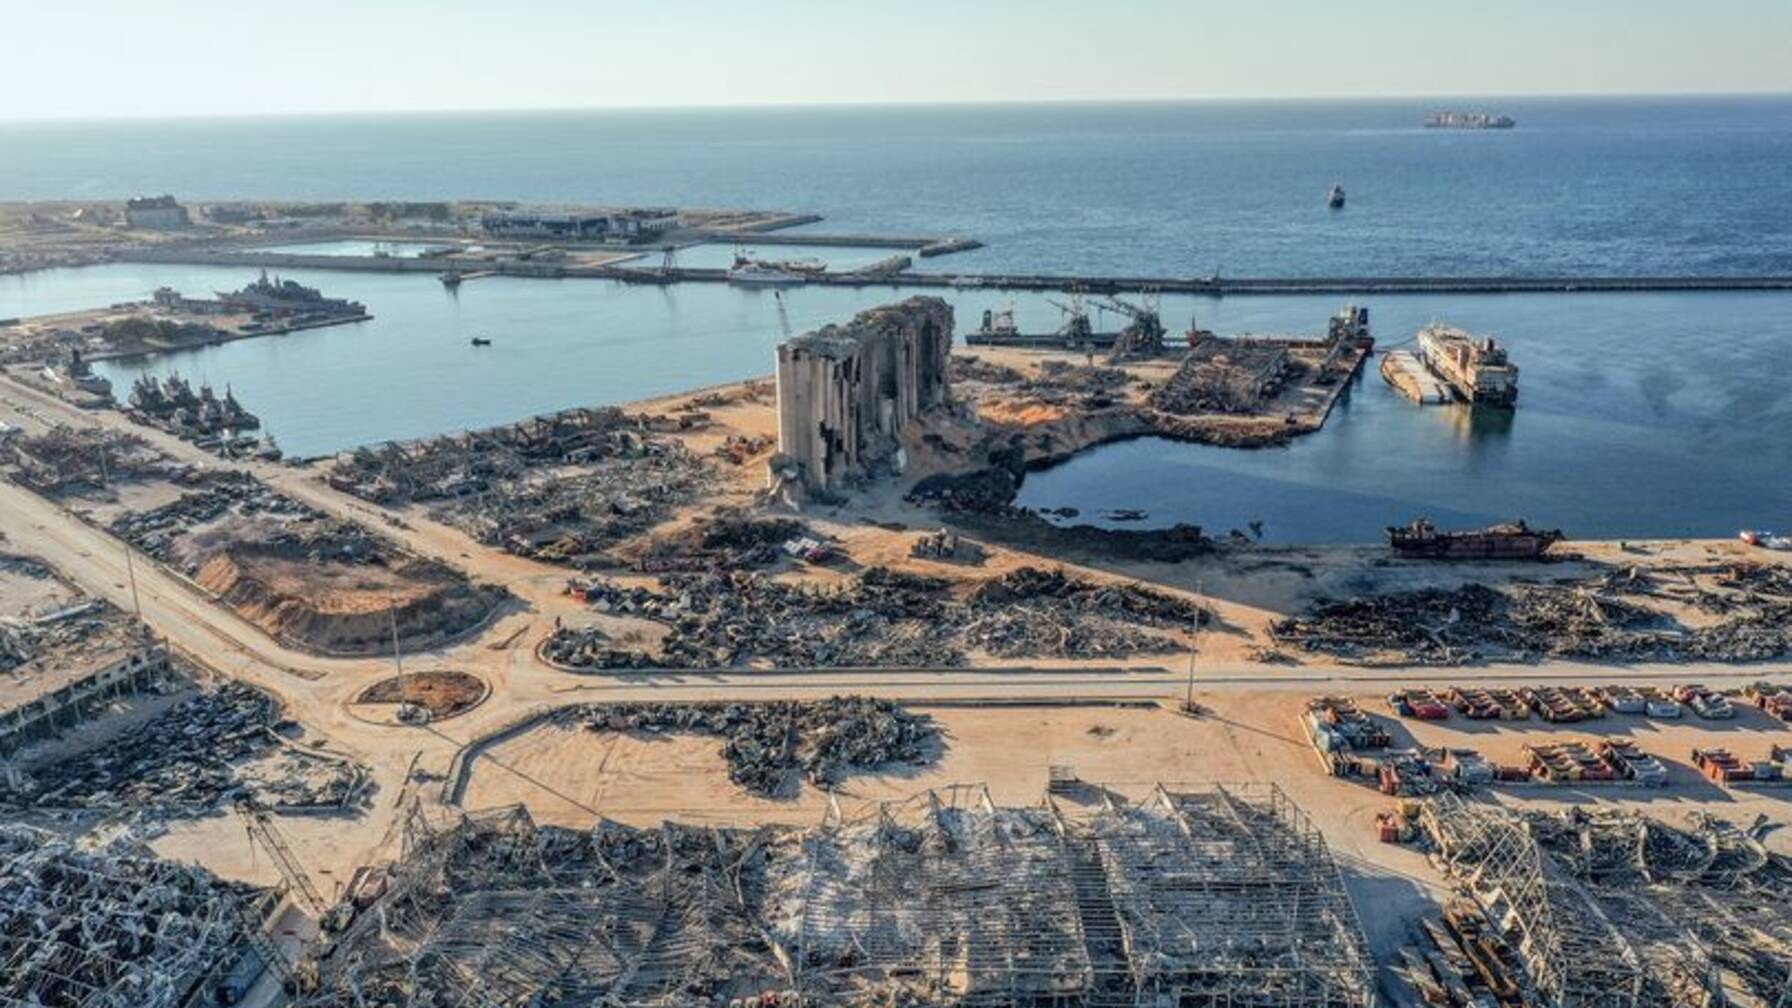 Il porto di Beirut circa un mese dopo l’esplosione del 4 agosto 2020. Fino ad oggi le rovine dei sili richiamano alla mente quanto è accaduto.